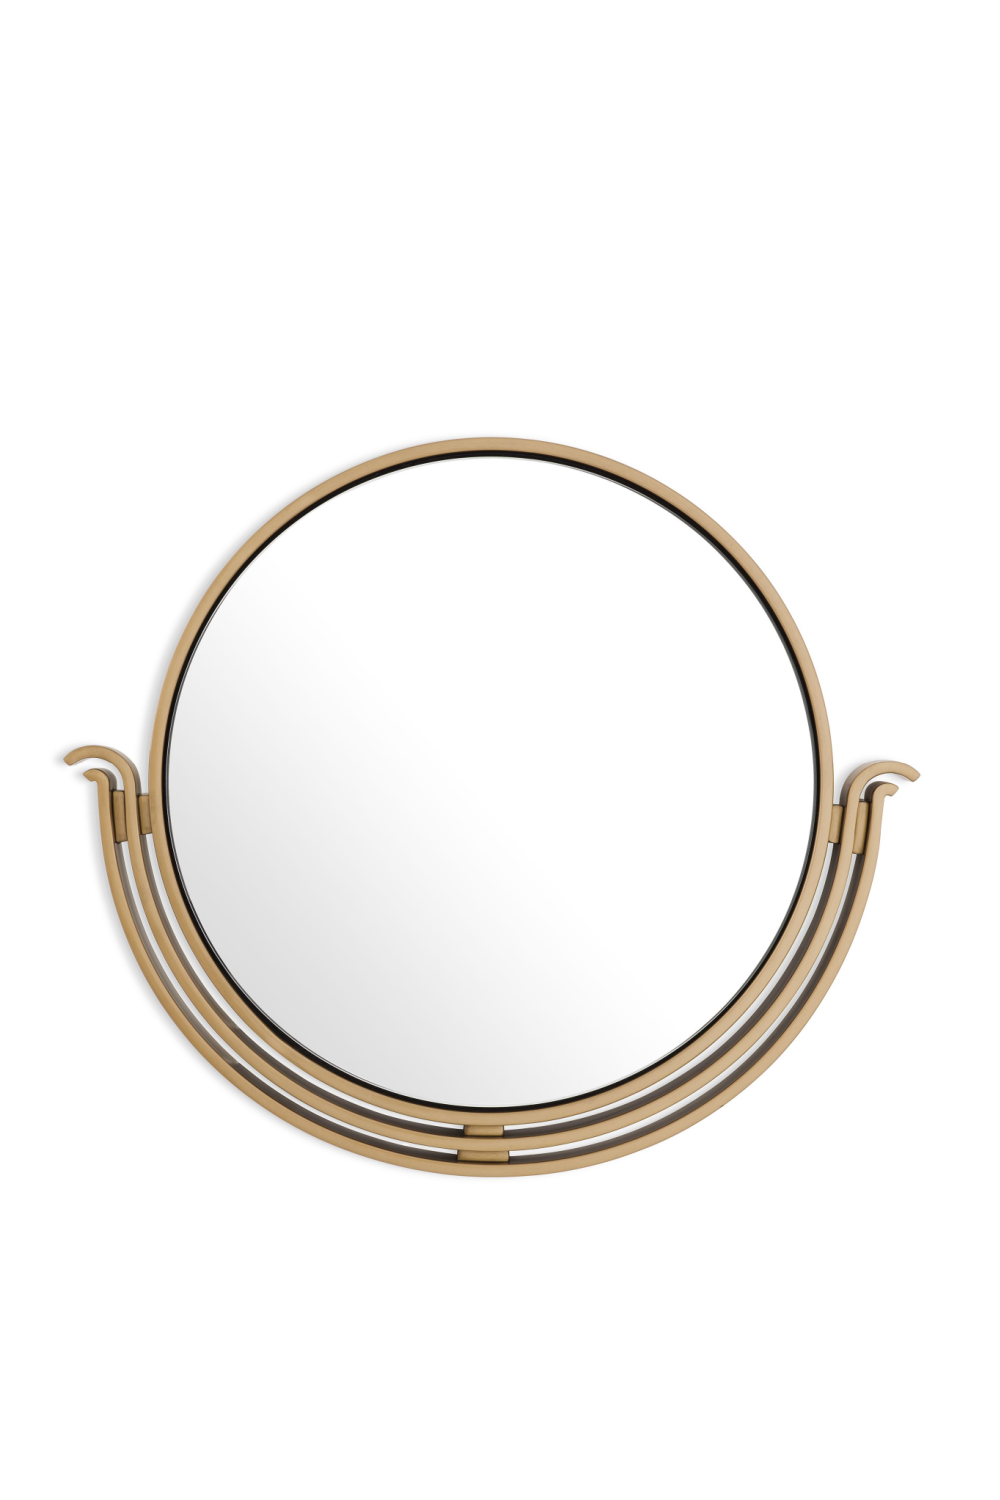 Antique Brass Round Mirror | Eichholtz Tombo | OROA.com